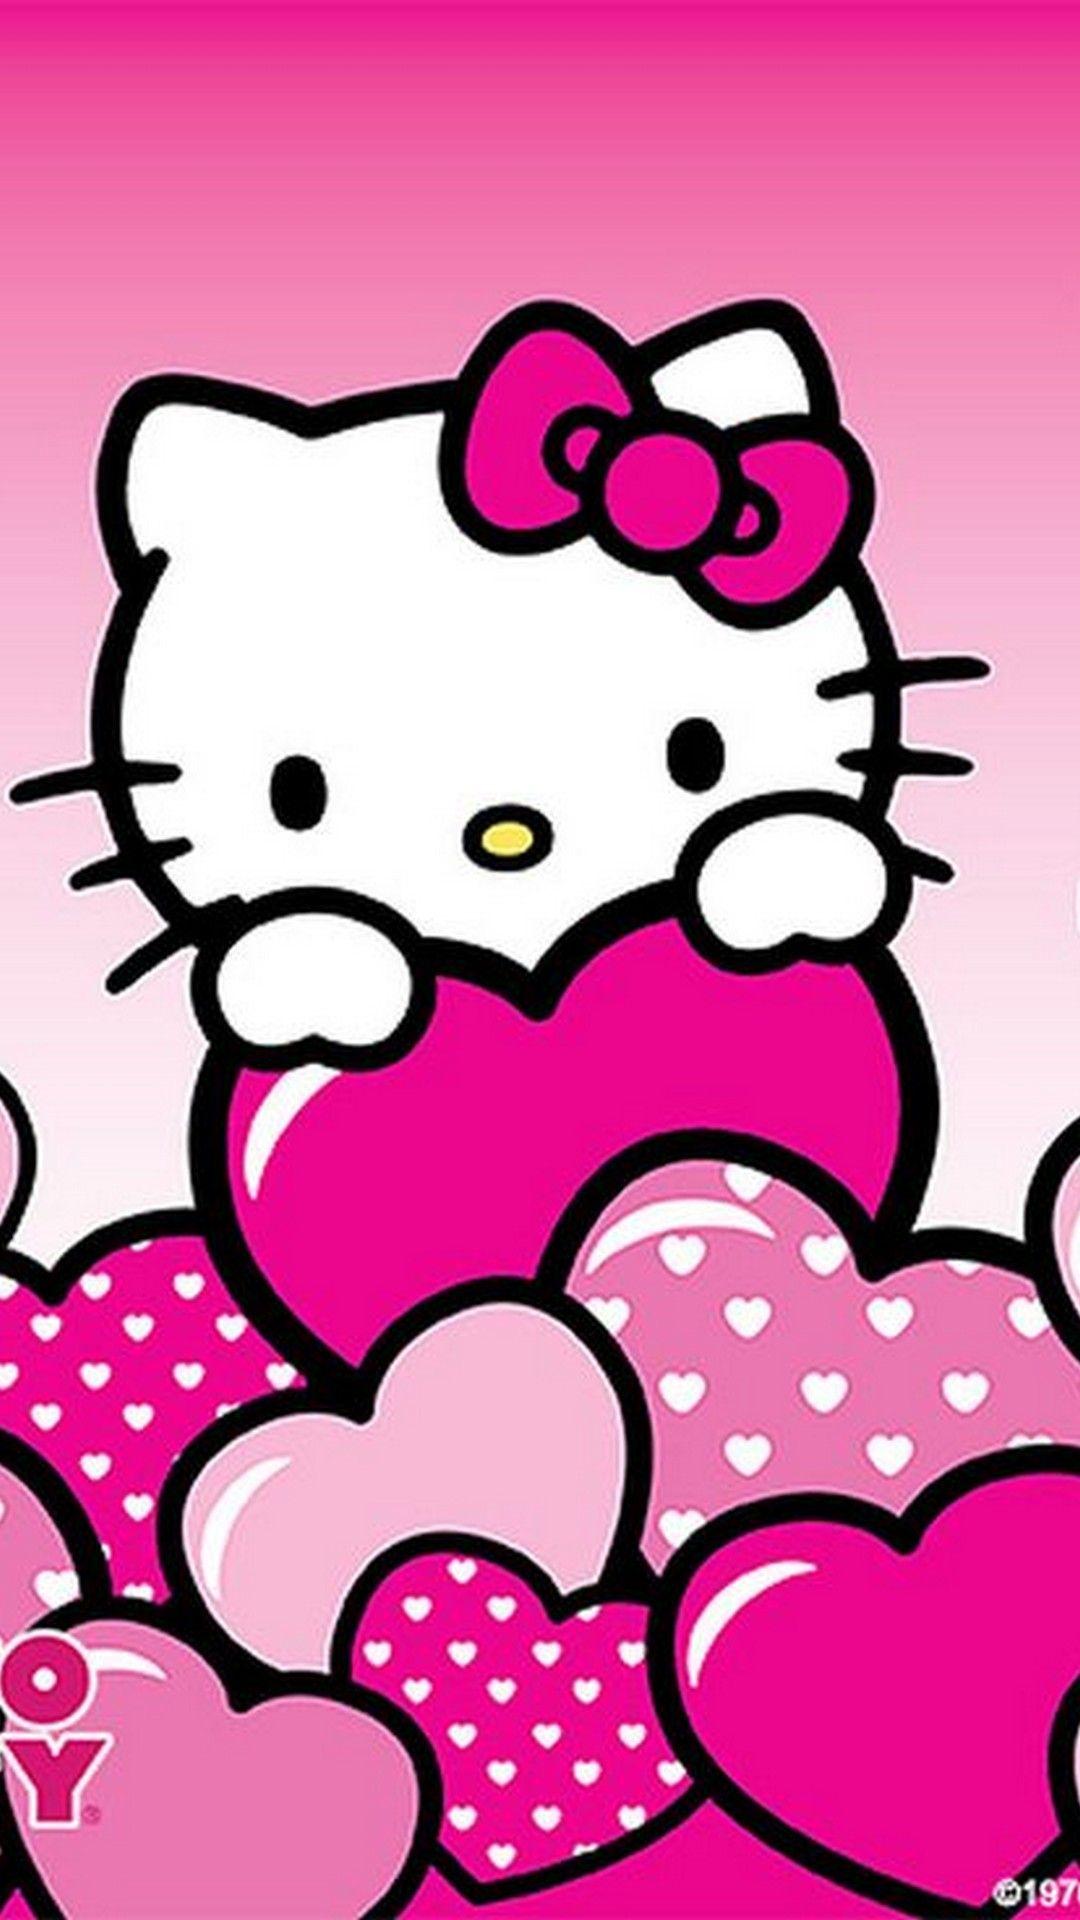 180 Ideas De Hello Kitty Wallpapers En 2021 Fondos De Hello Kitty ...